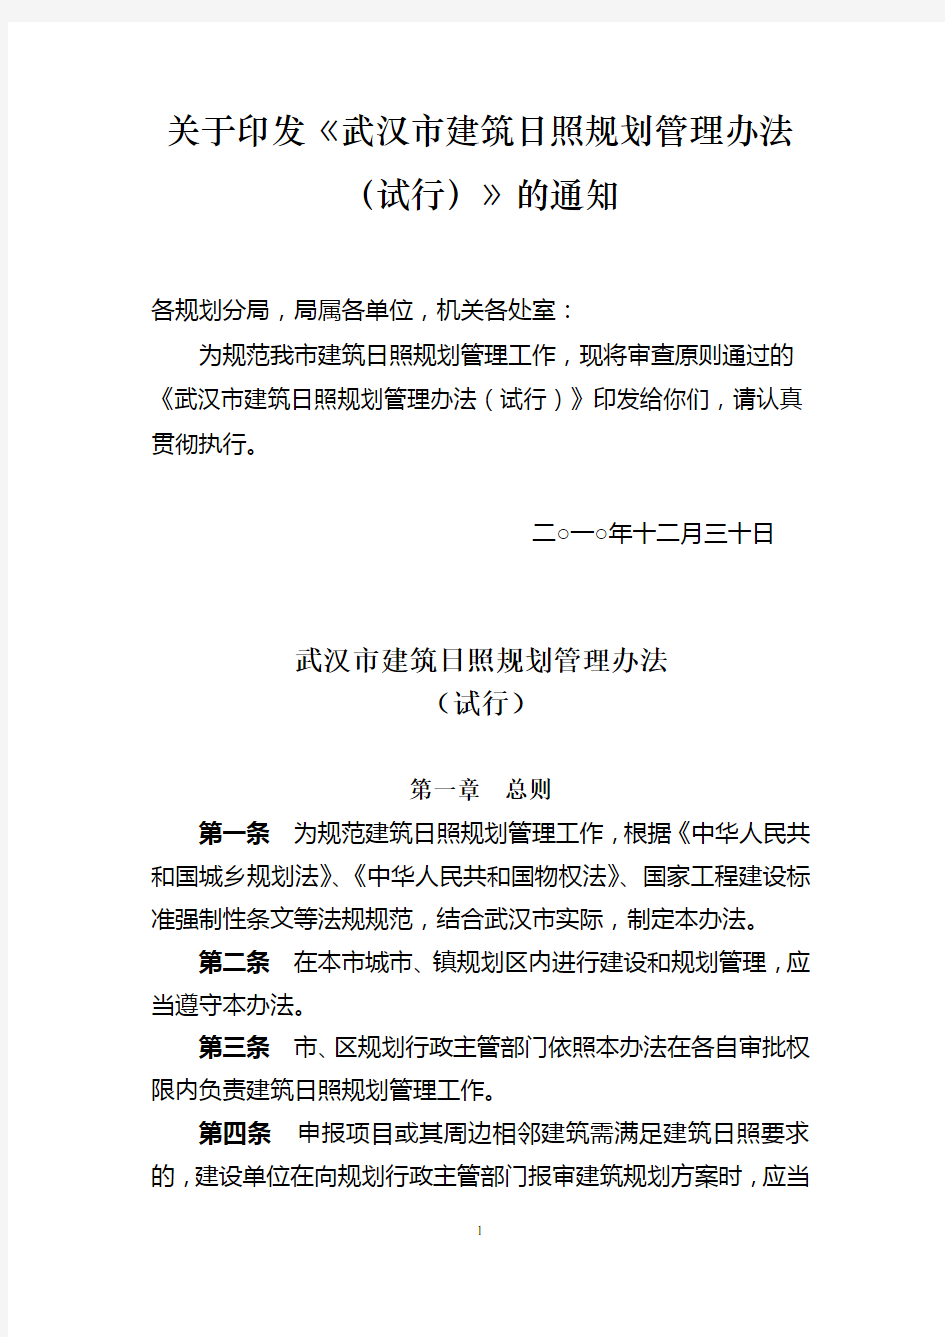 武汉市建筑日照规划管理办法及规程.